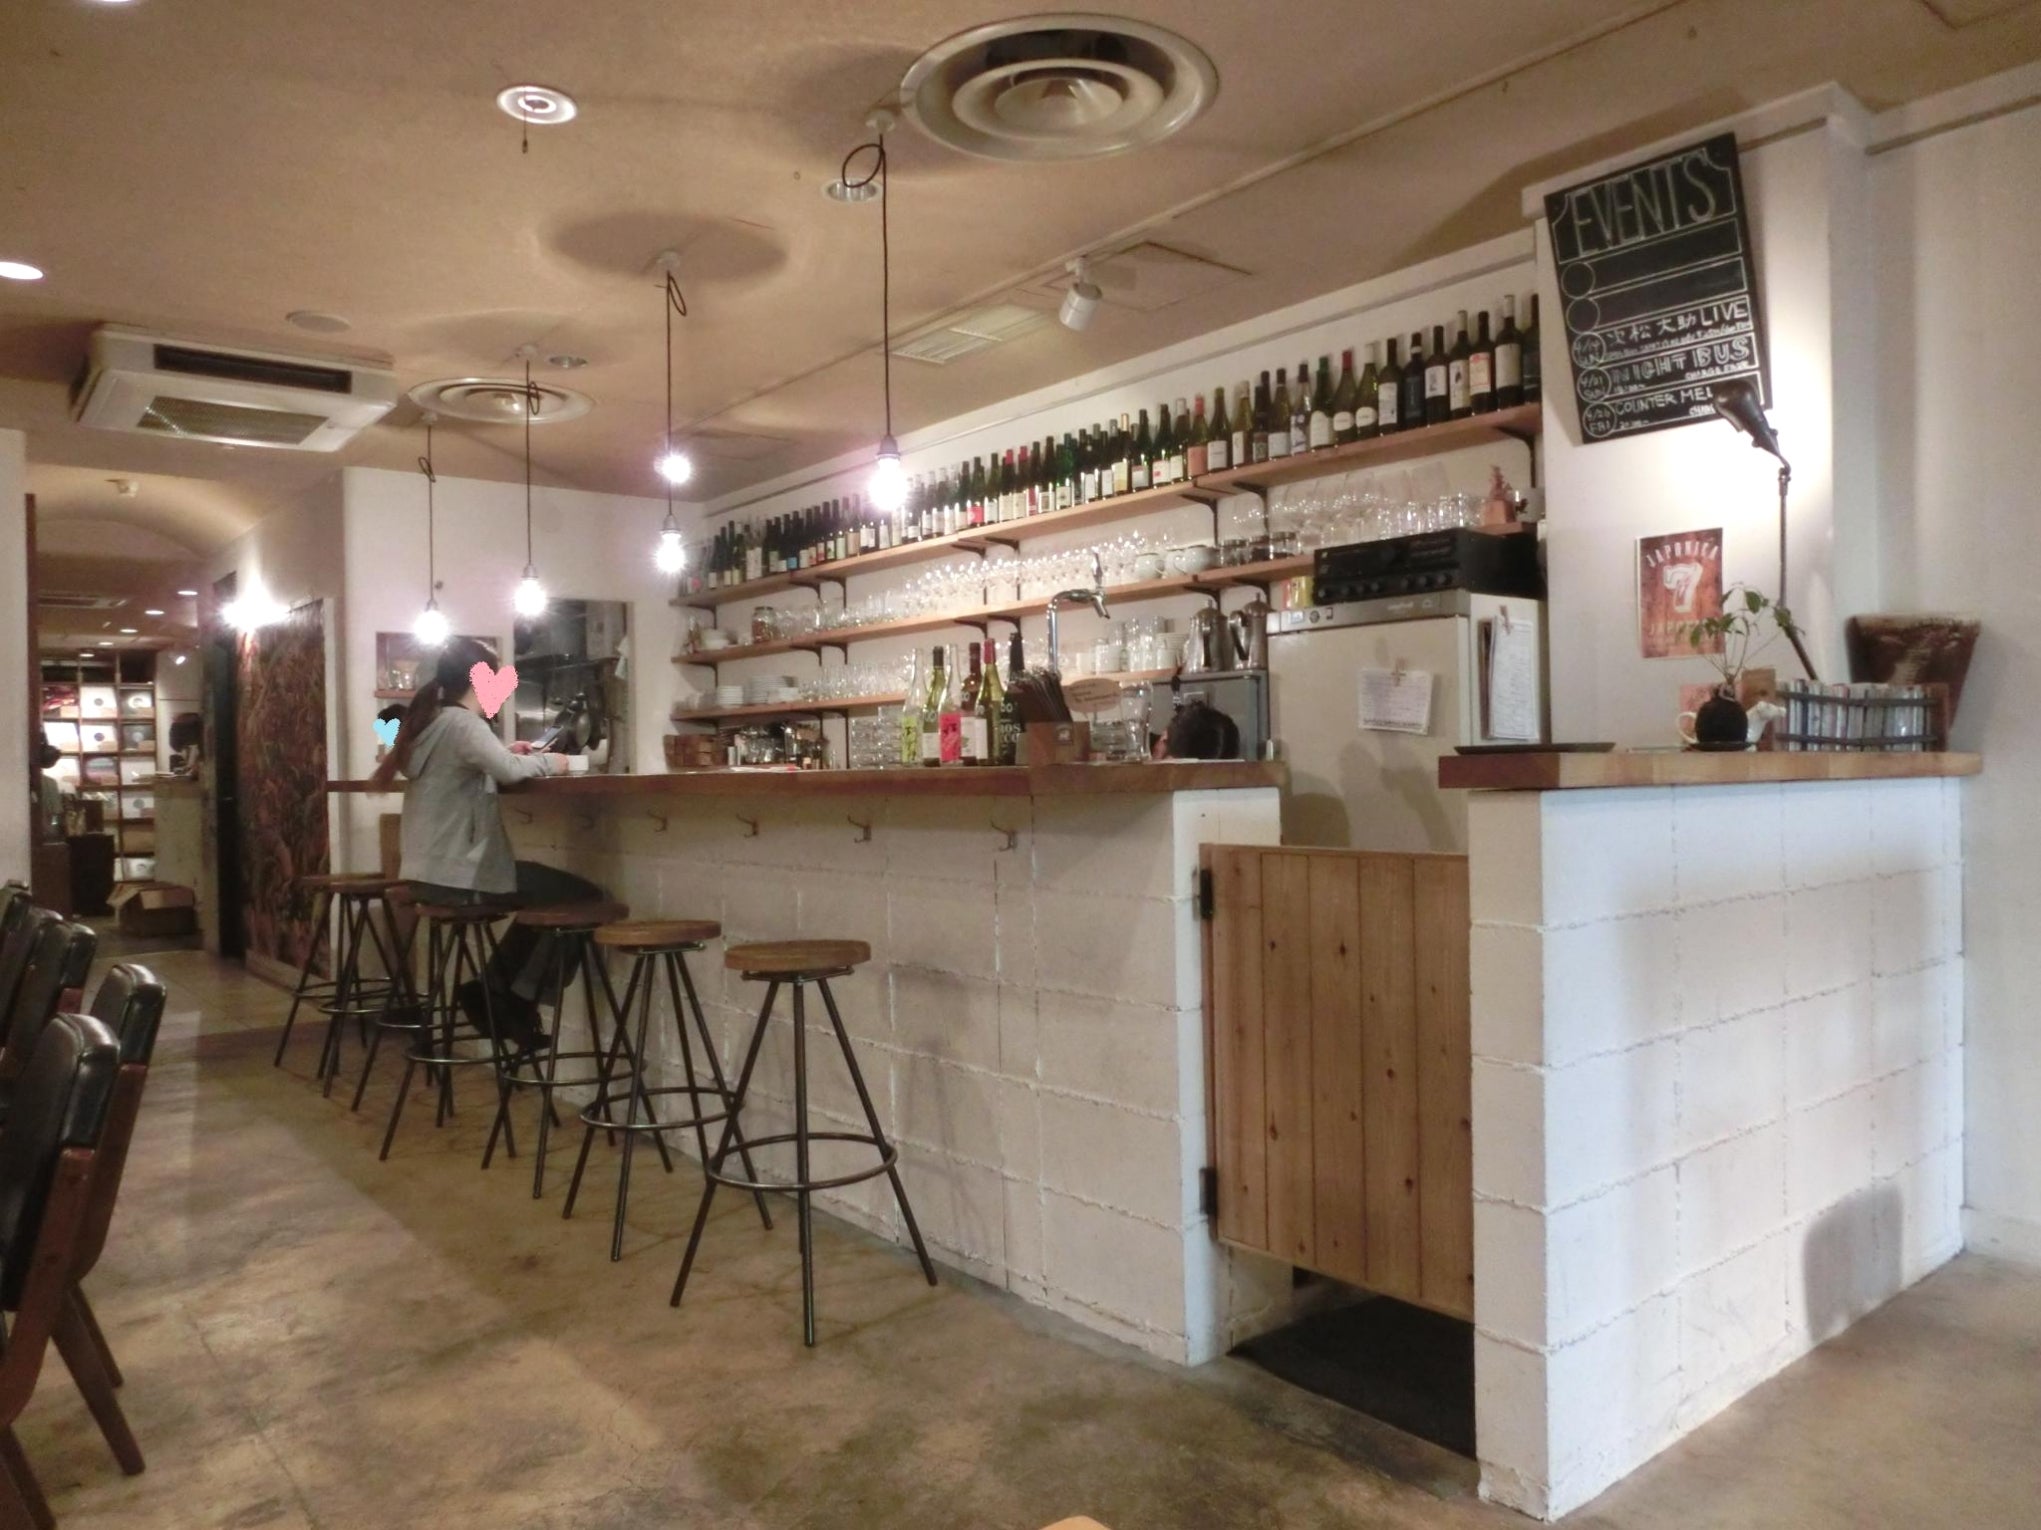 JAPONICA (dining bar & cafe)の店内の様子の写真